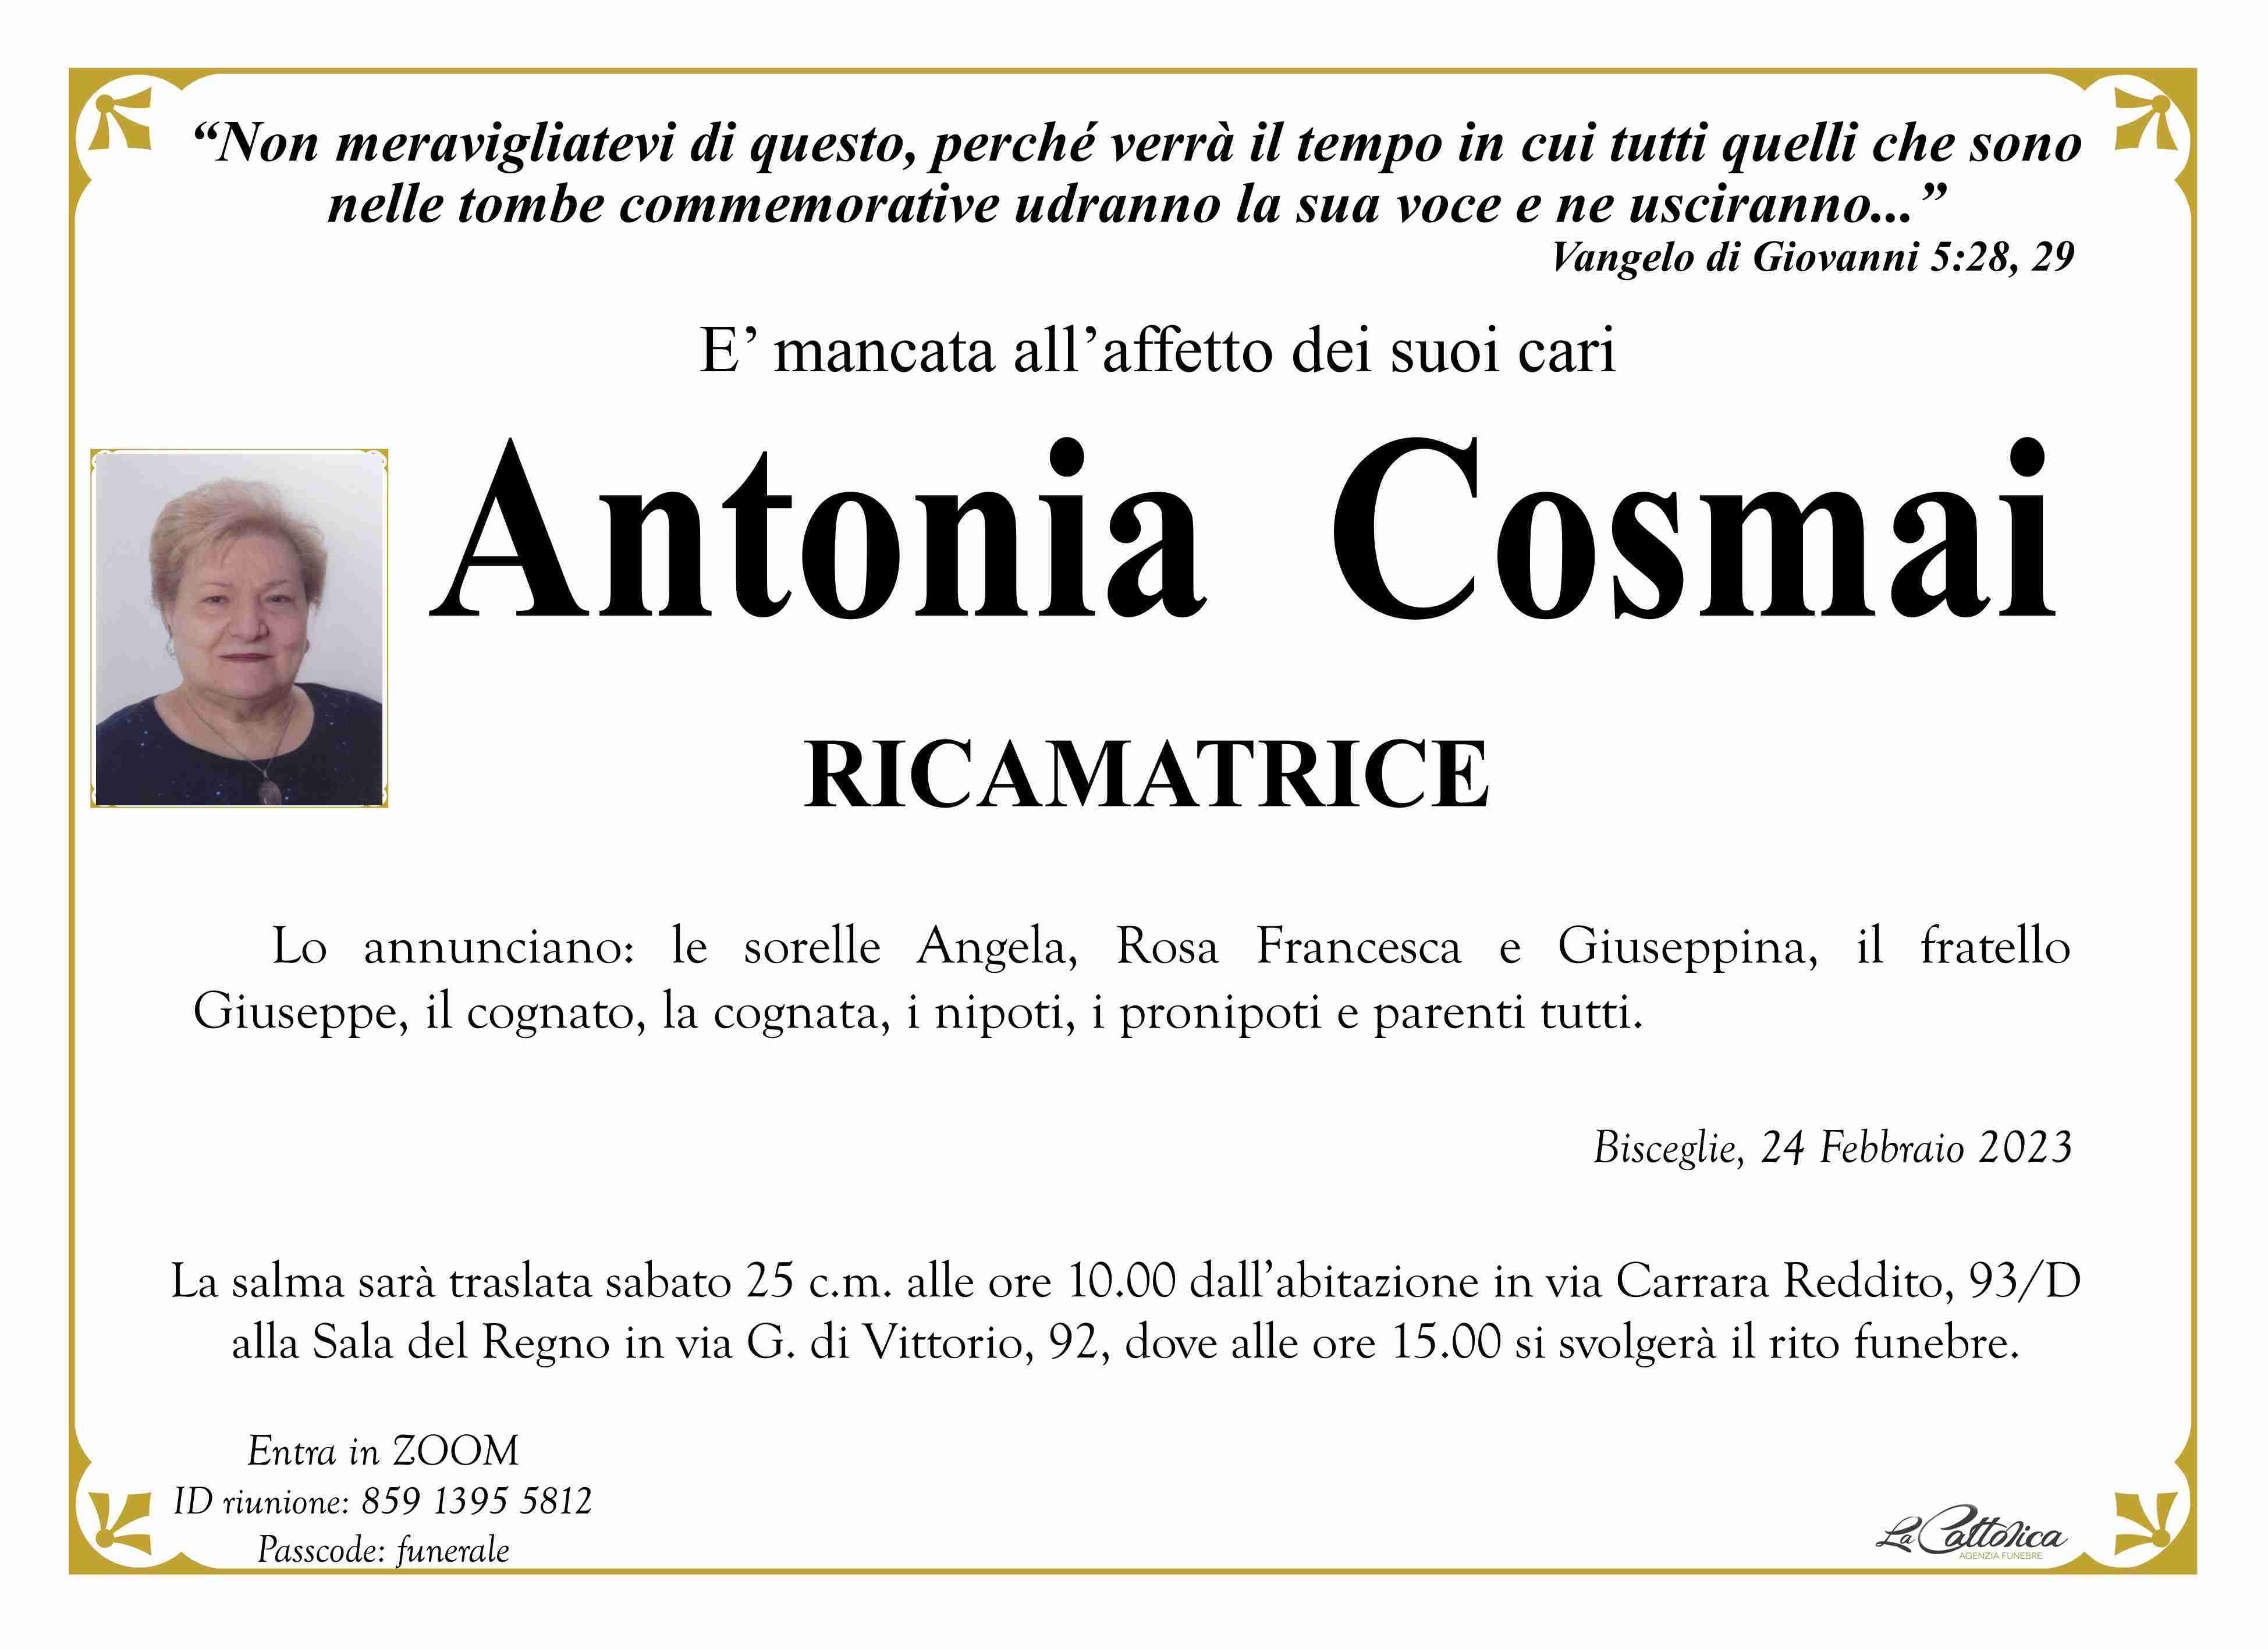 Antonia Cosmai